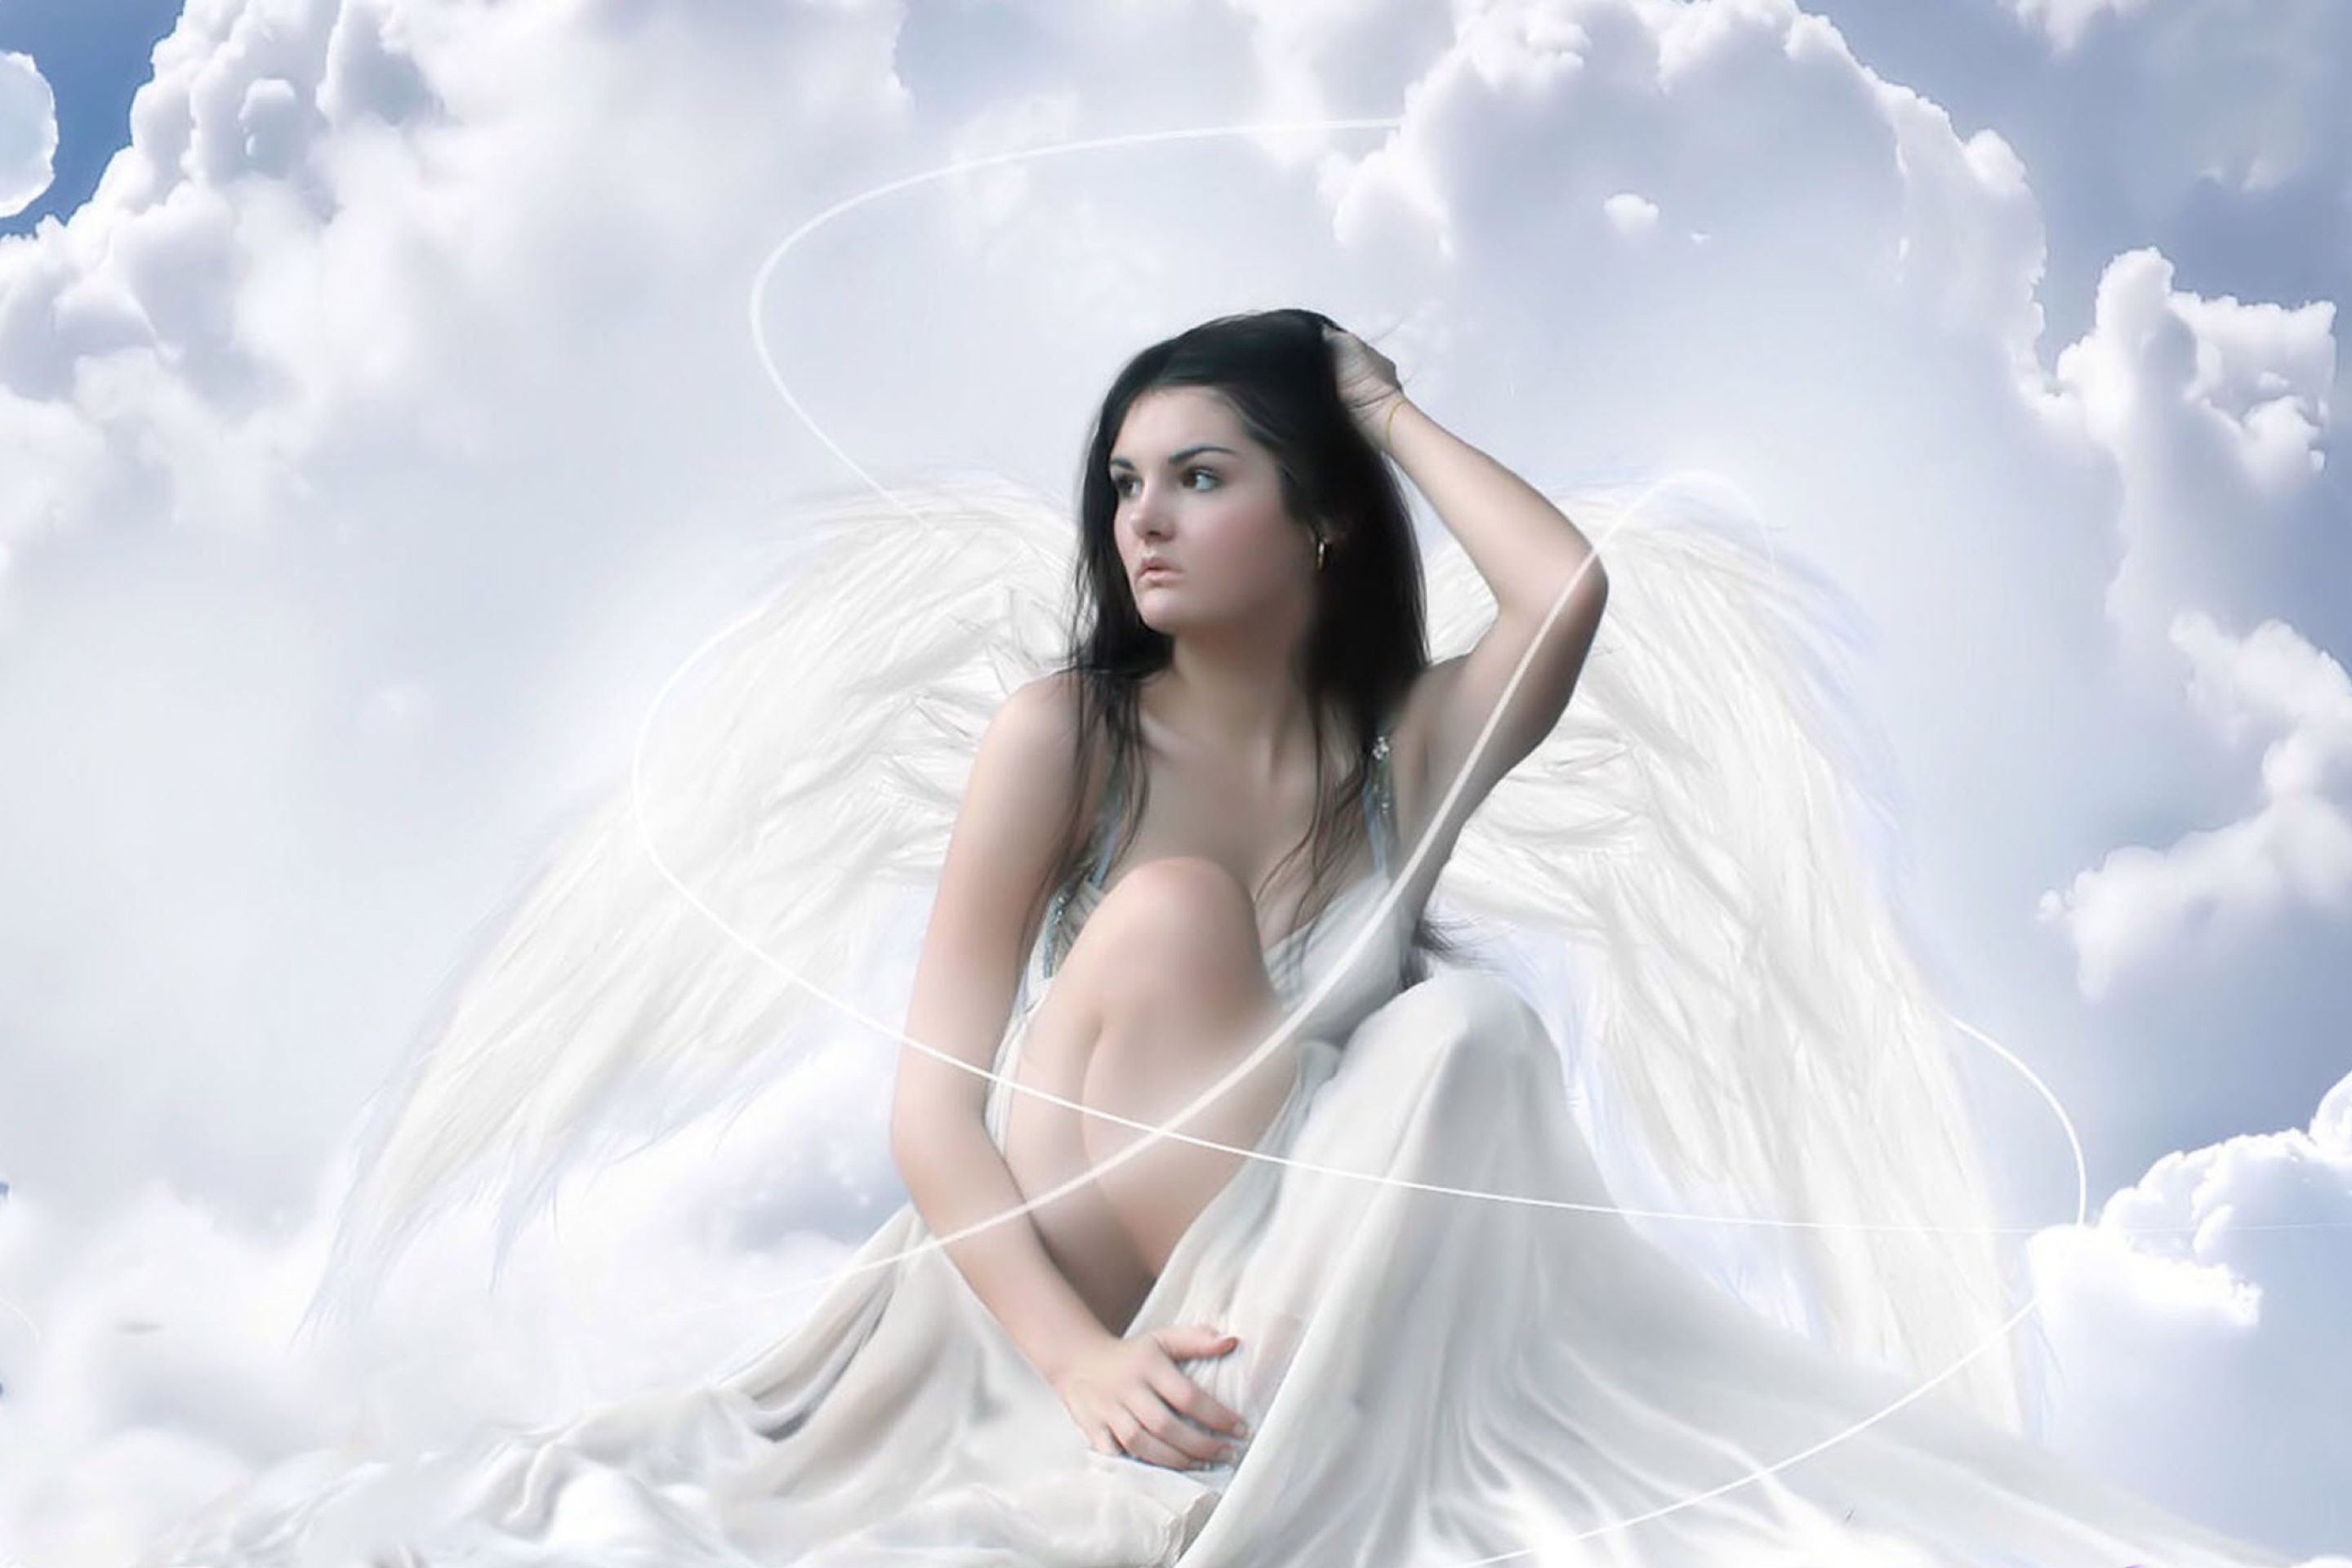 Teen girls angels models. Энджел Уайт ангел. Ангел богиня. Нефела богиня. Девушка - ангел.